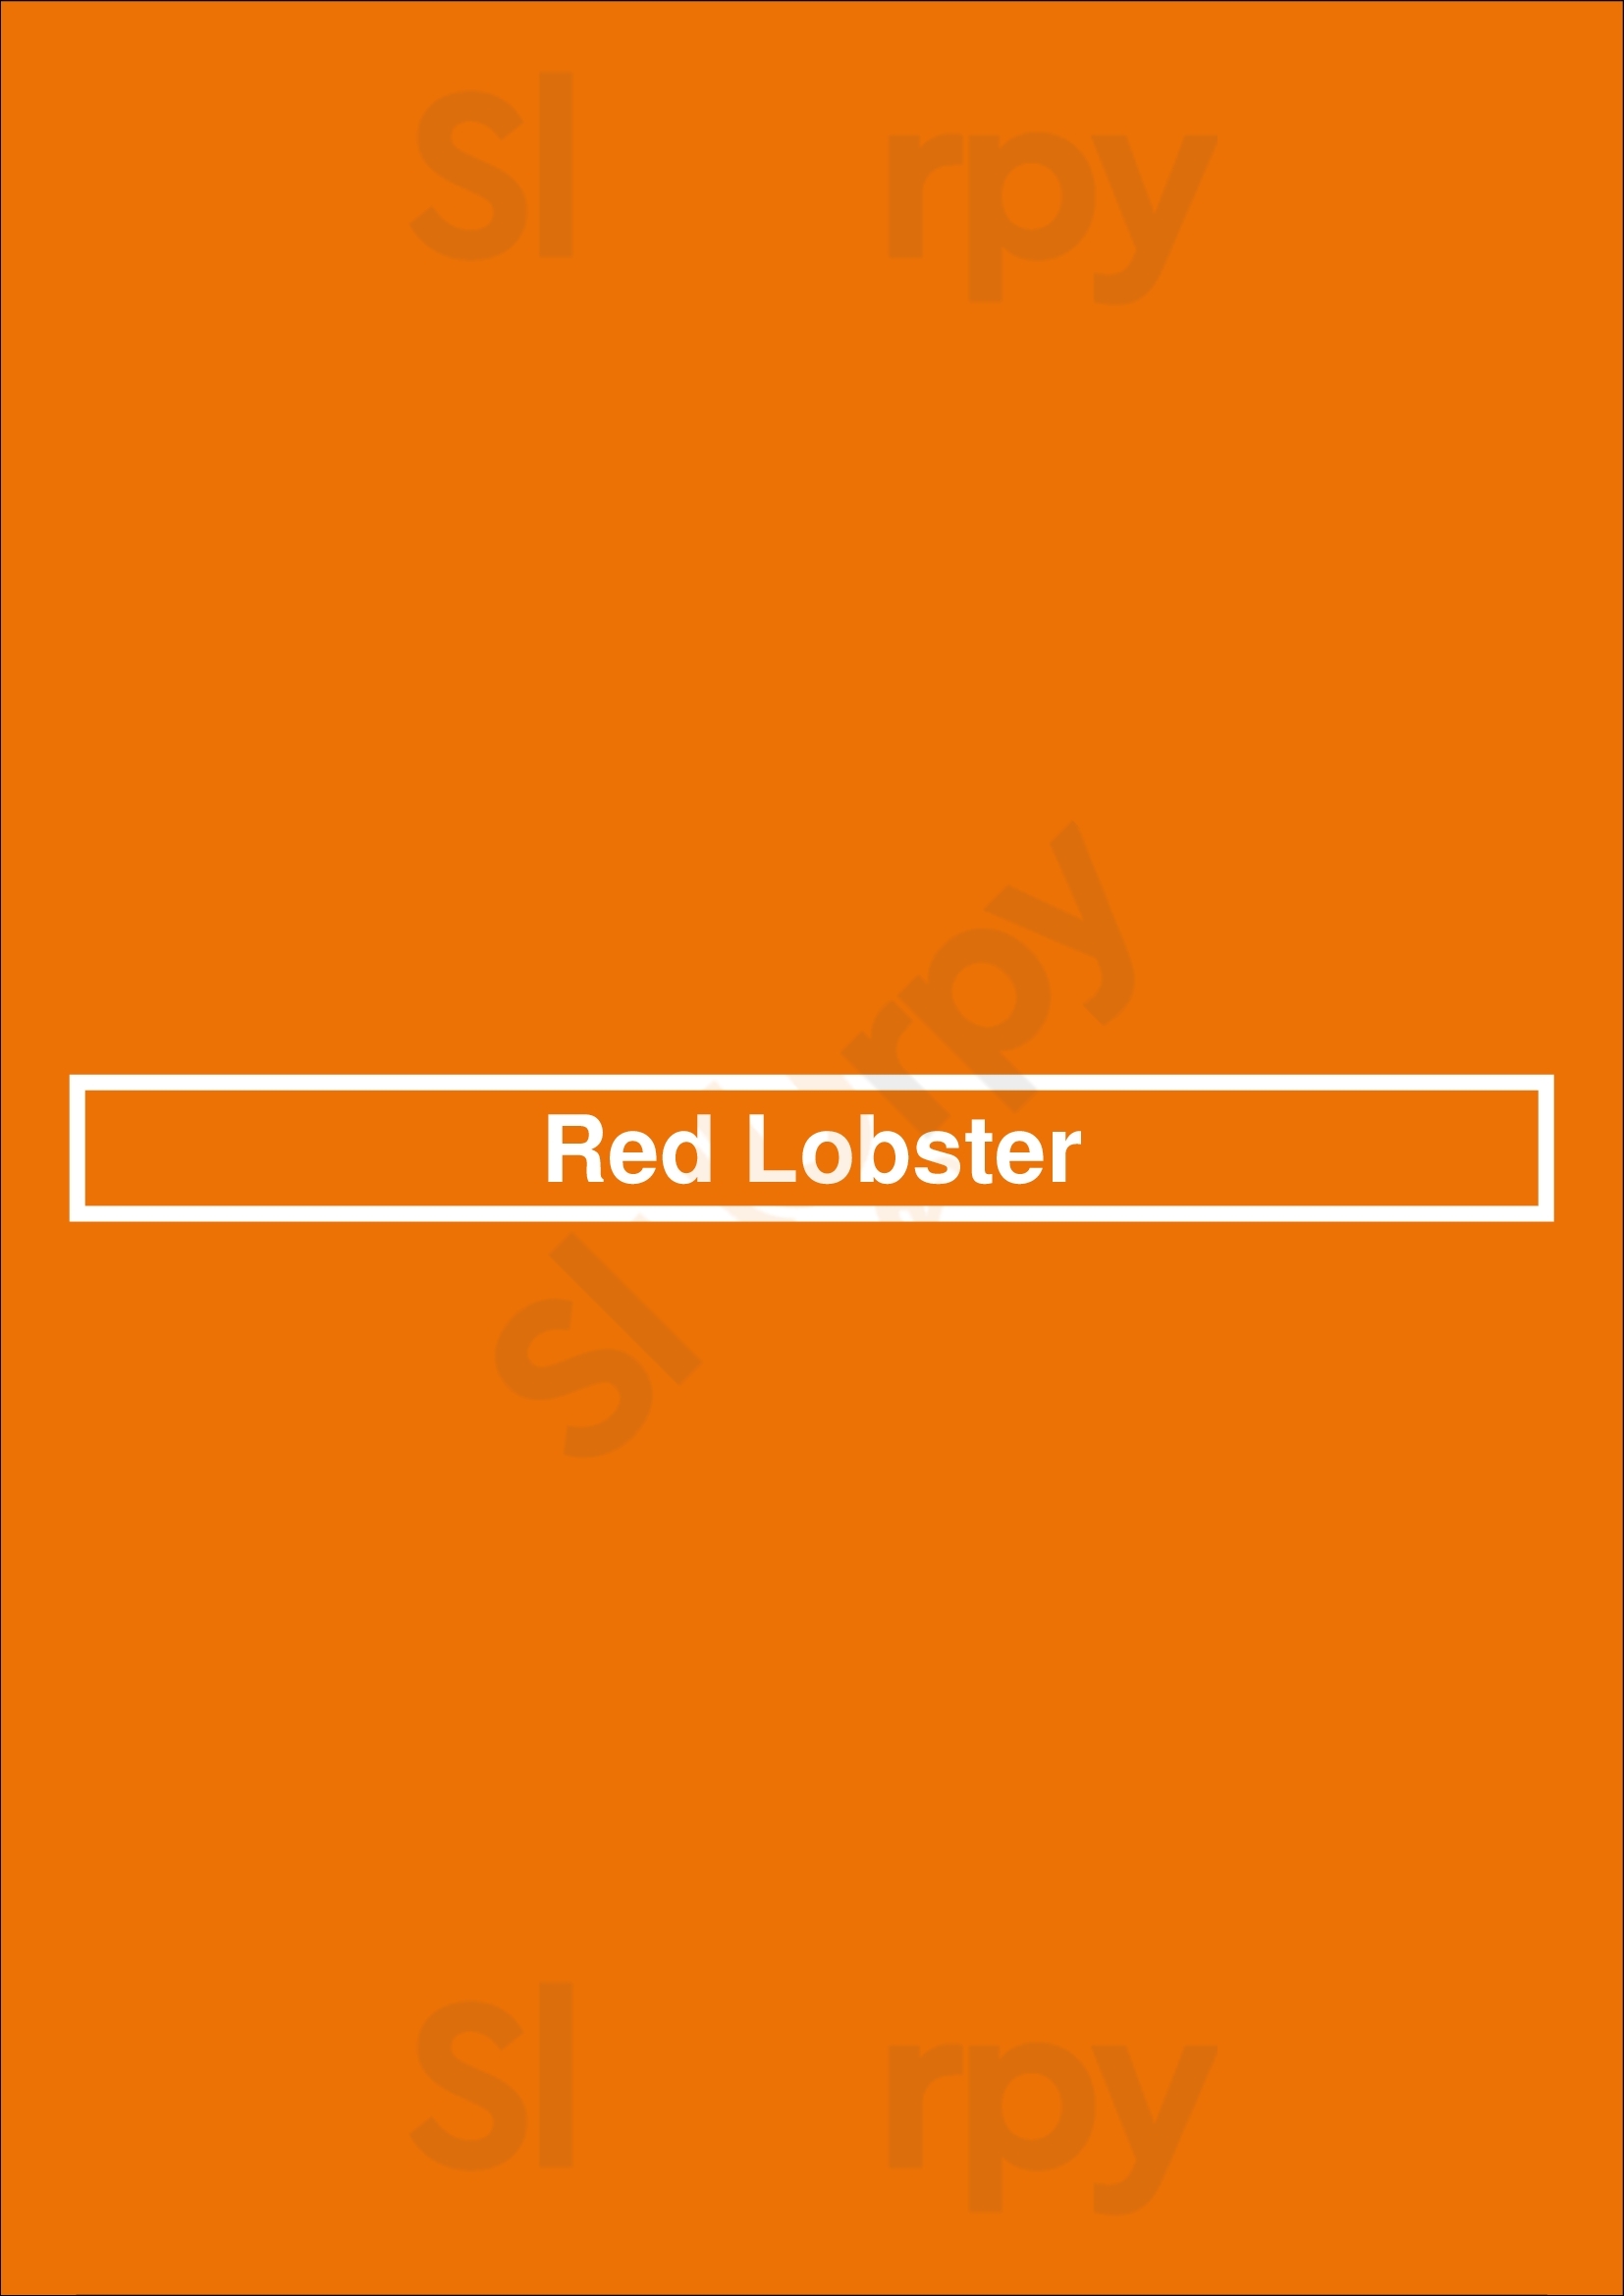 Red Lobster Hattiesburg Menu - 1